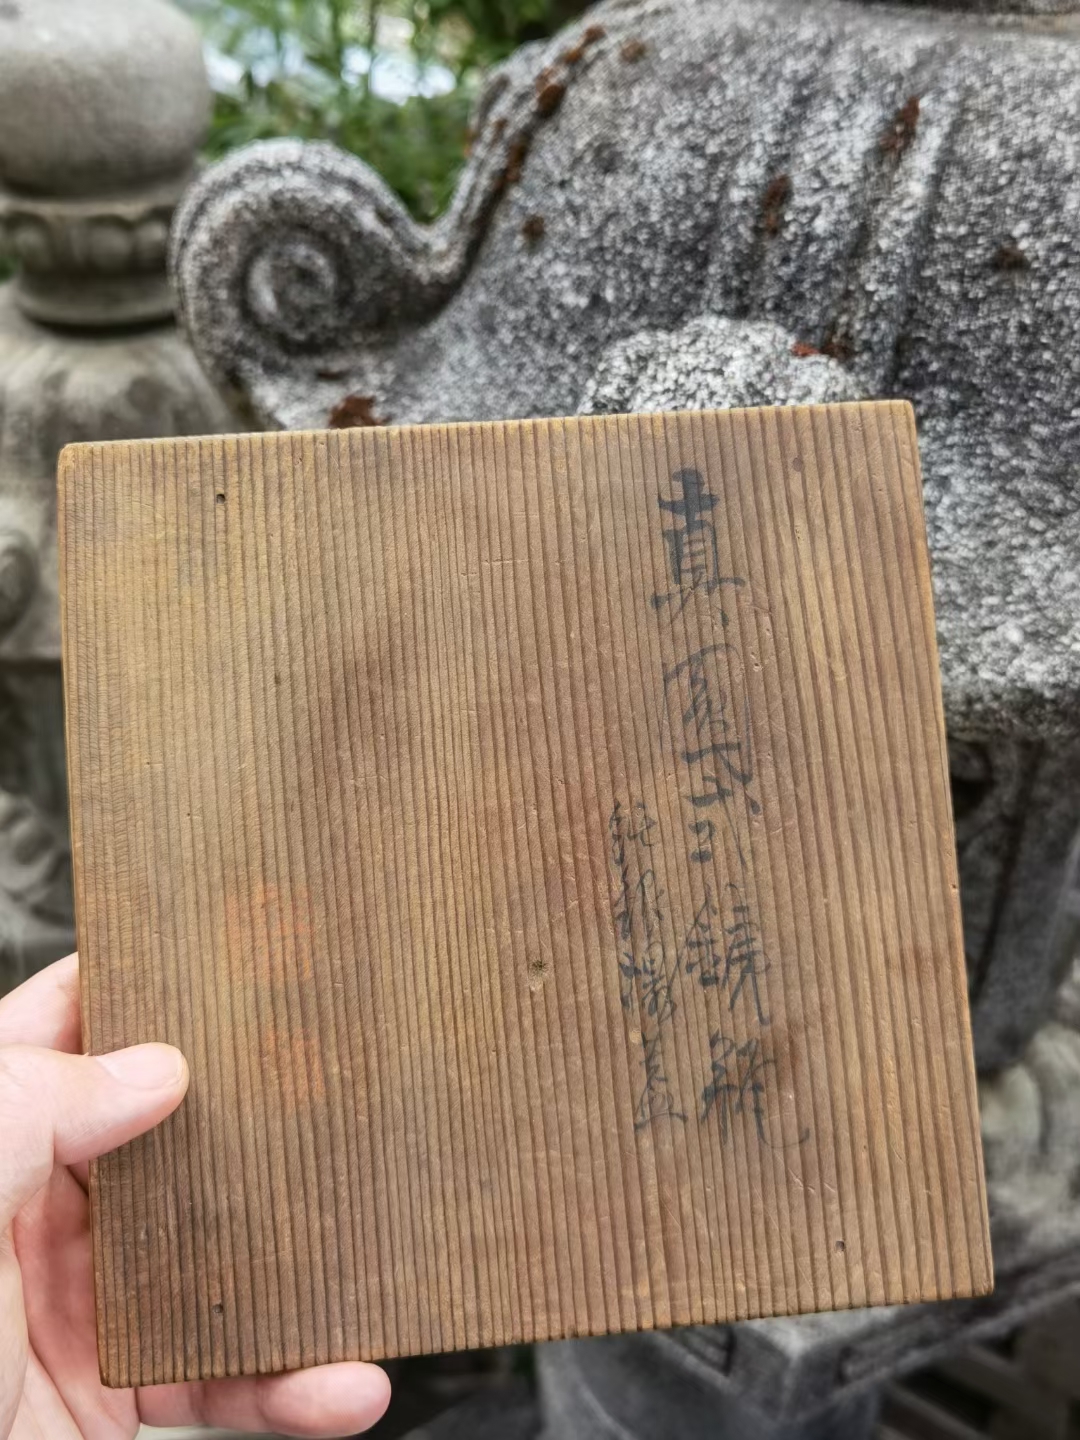 日本 明治时期 二代金寿堂 方章底款 铜镜盖 平铜提手 砂铁